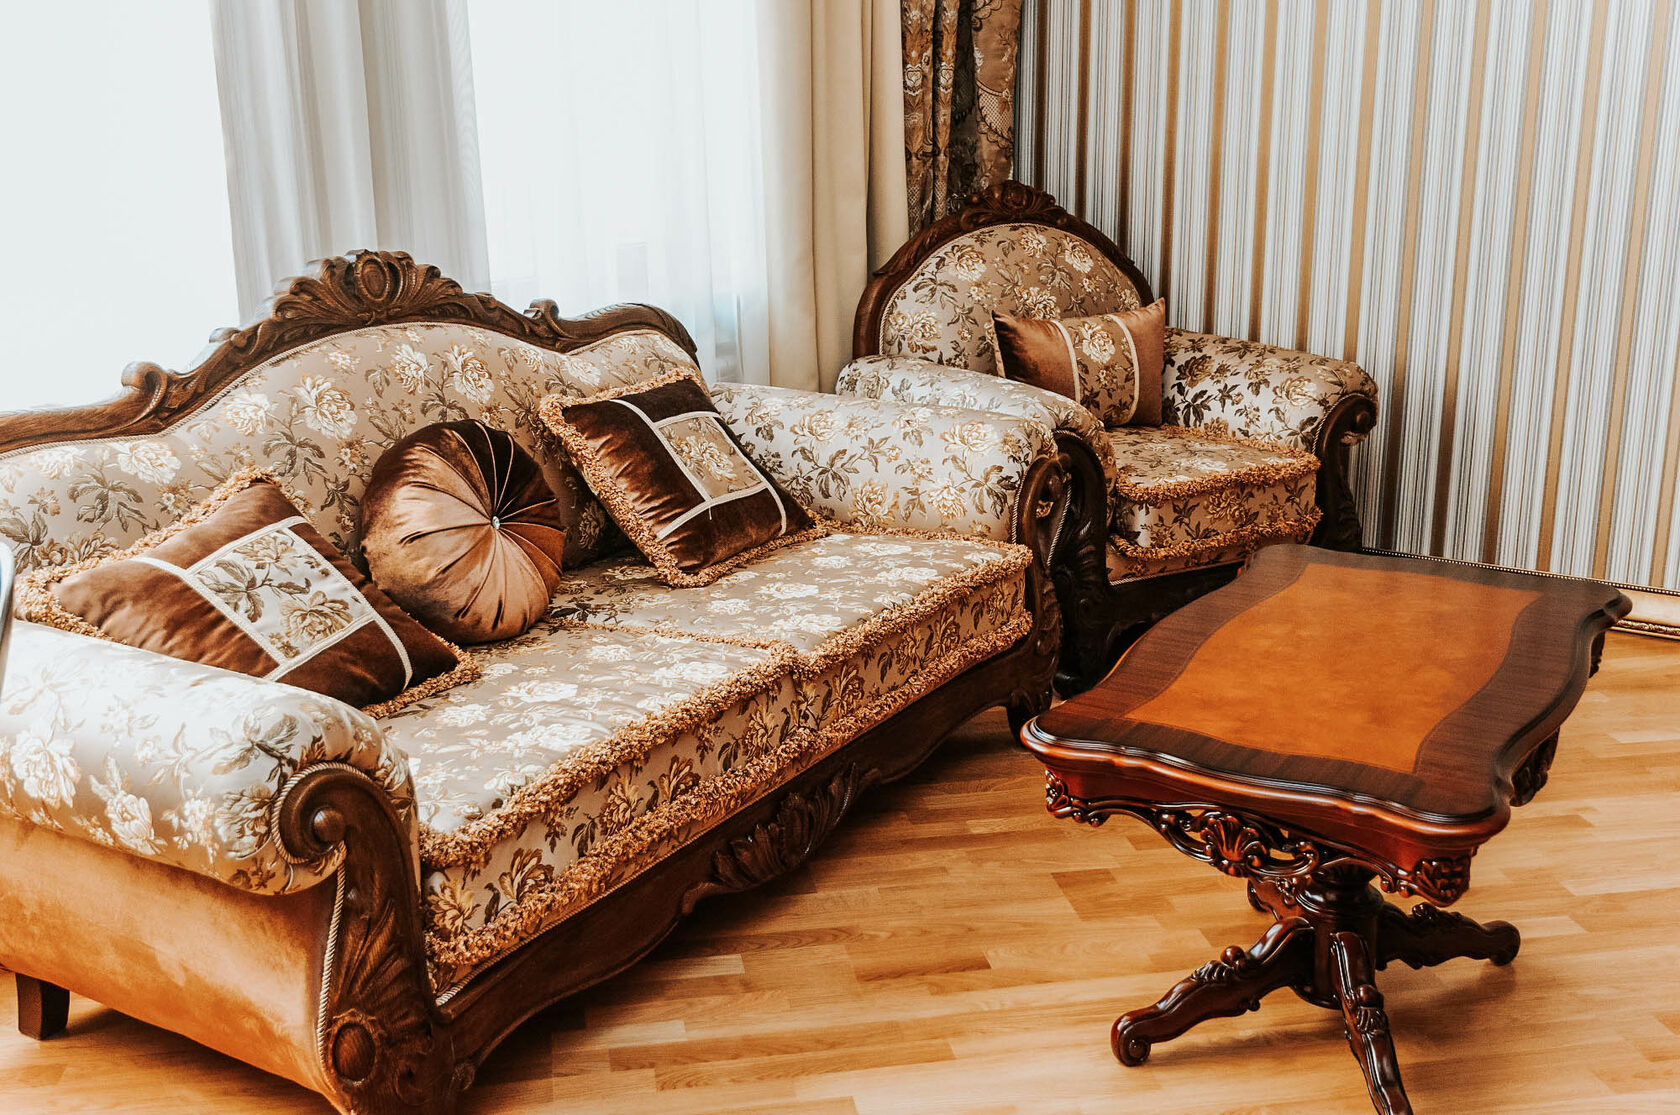 Купить набор мягкой мебели в Кисловодске фото и цена